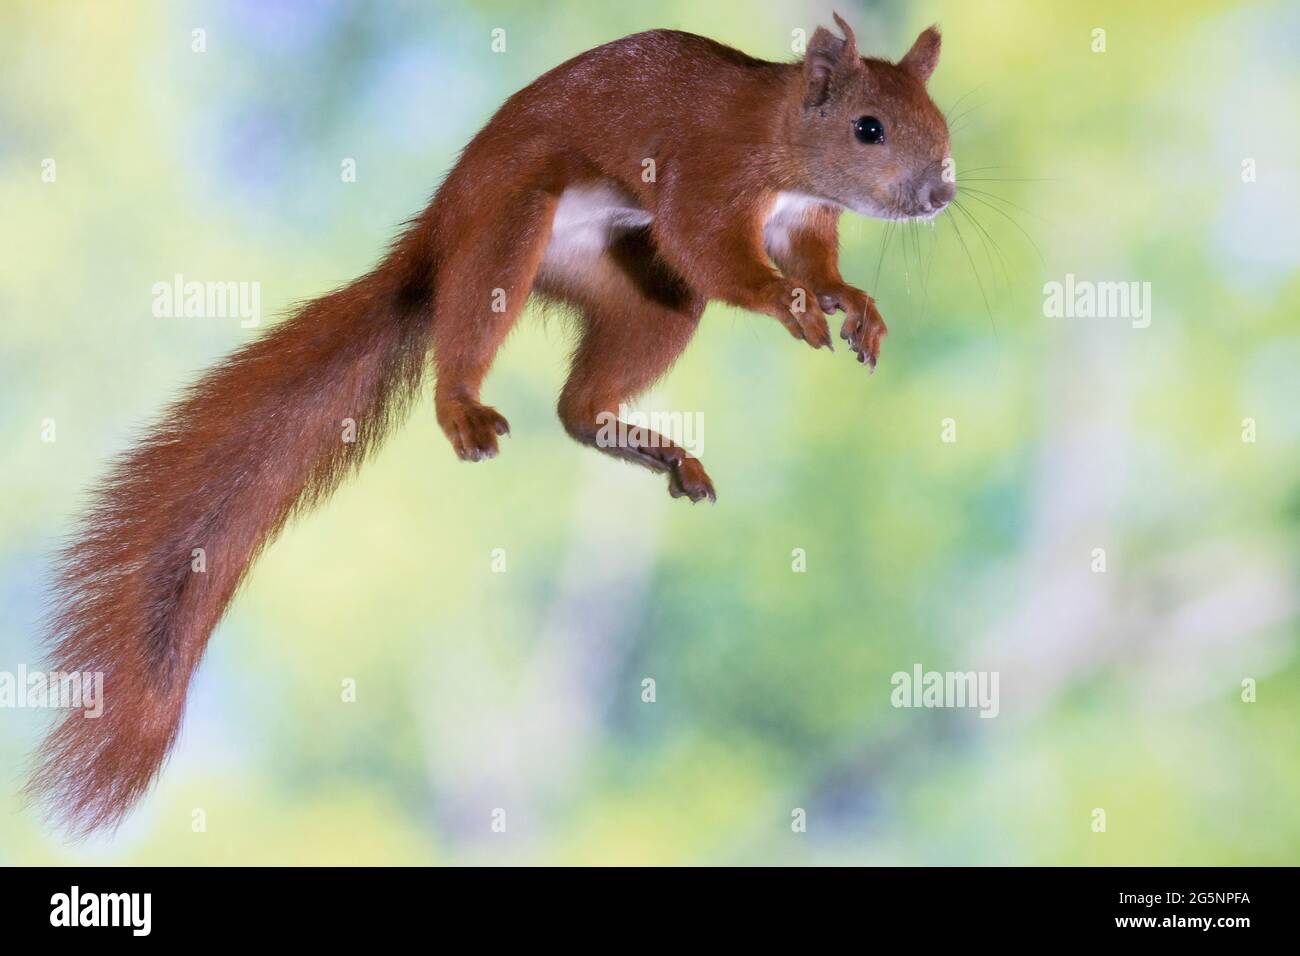 Europäisches Eichhörnchen, Eurasisches Eichhörnchen, Eichhörnchen, im Sprung, Flug, springend, Sciurus vulgaris, European red squirrel, red squirrel, Stock Photo